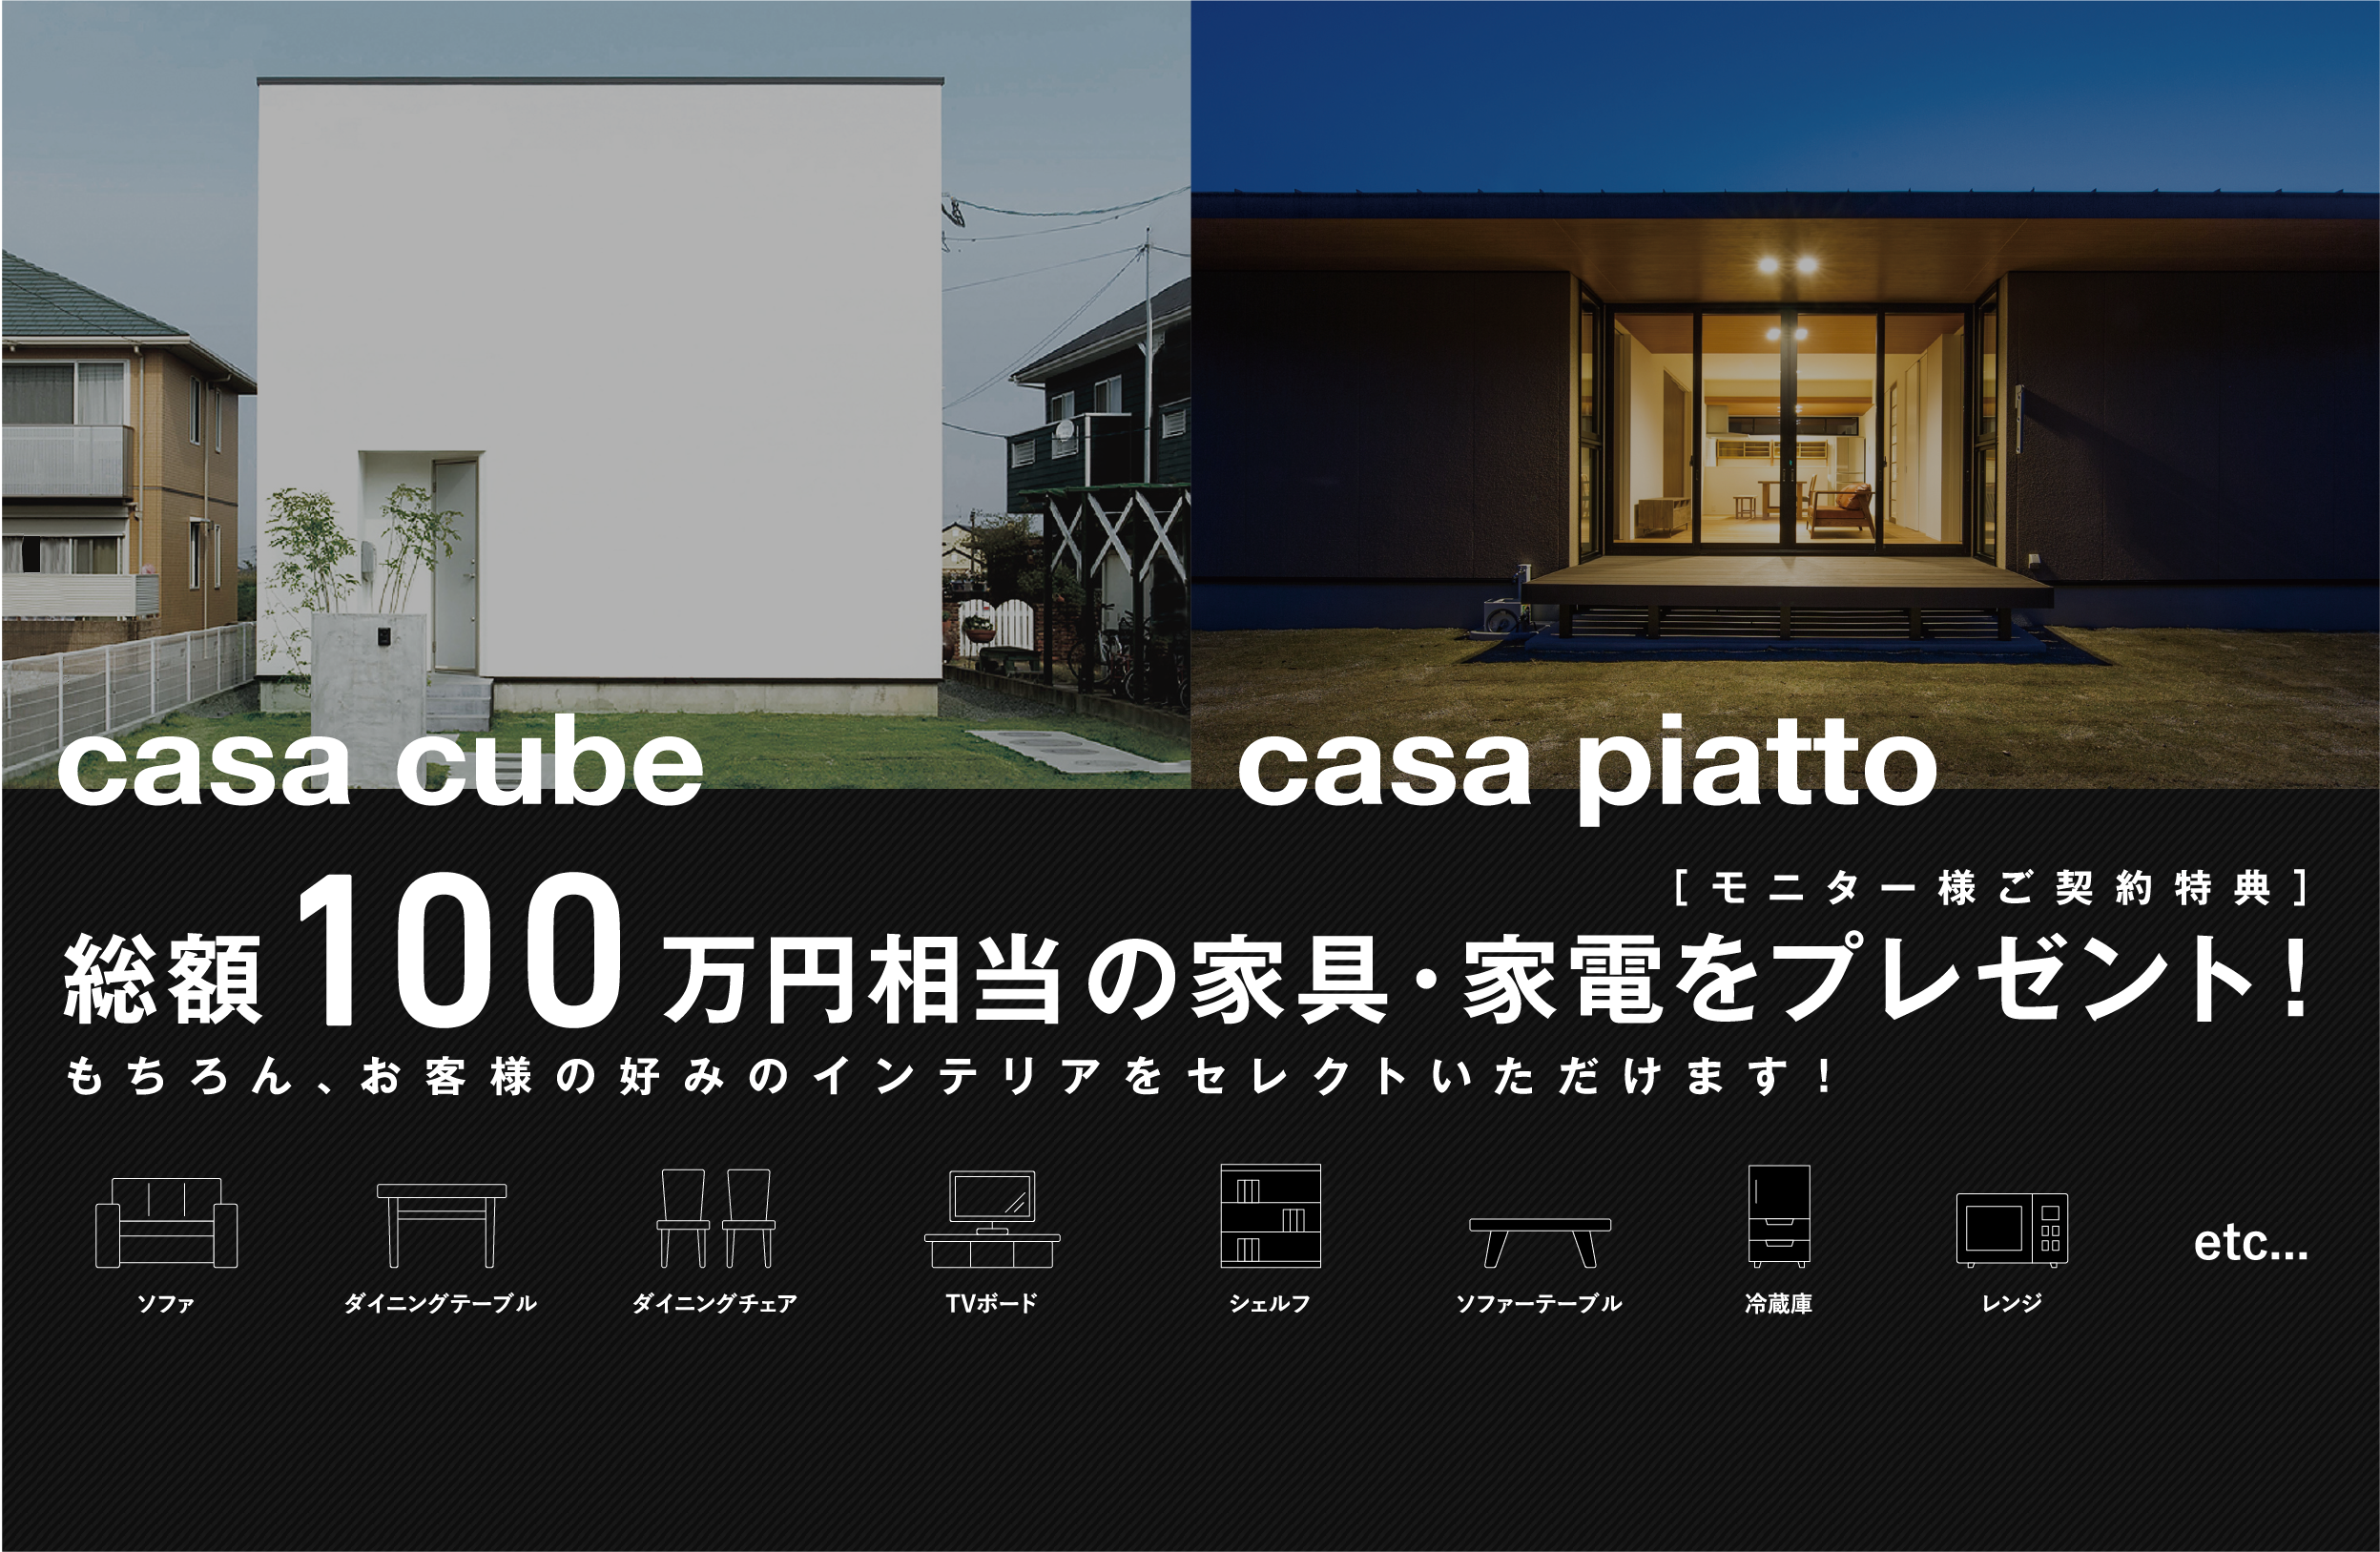 casa cube、casa piatto モニター様ご契約特典は総額100万円相当の家具・家電をプレゼント！ もちろん、お客様の好みのインテリアをセレクトいただけます！